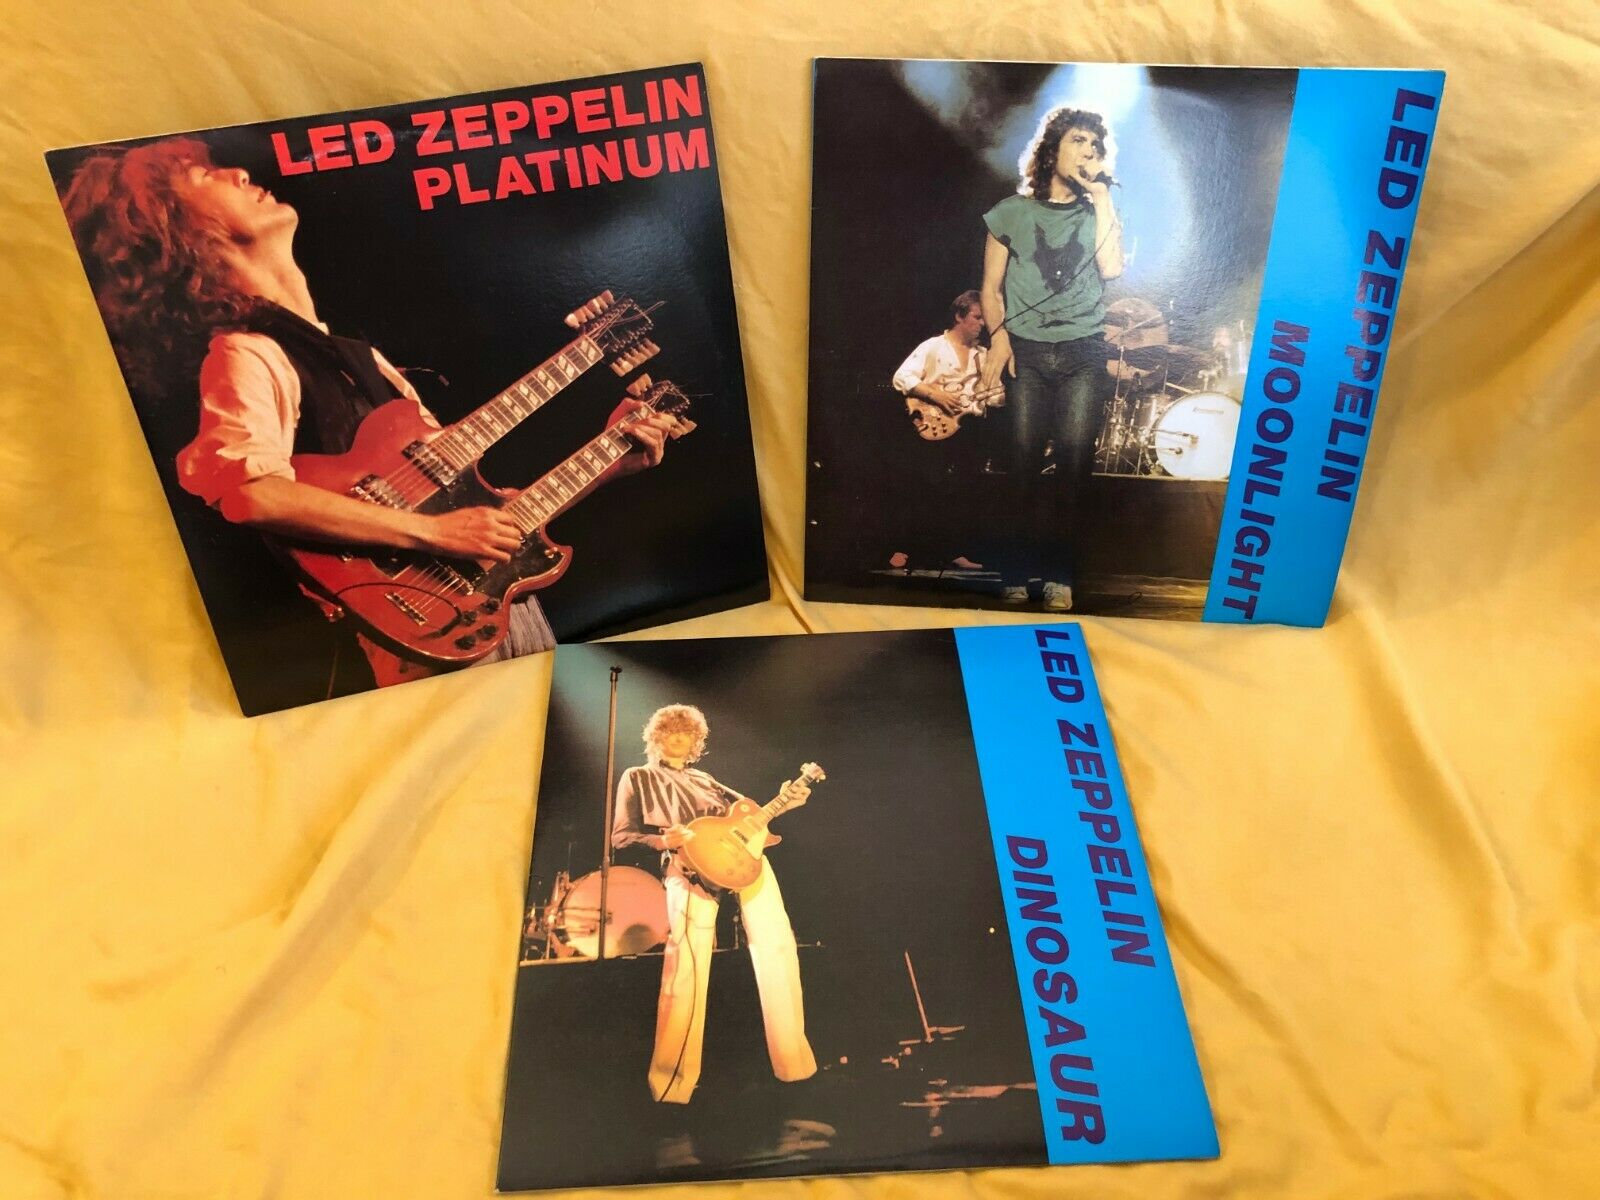 Led Zeppelin - Platinum, Moonlight, Dinosaur- 3 concerts on 6 LPs  Not TMOQ